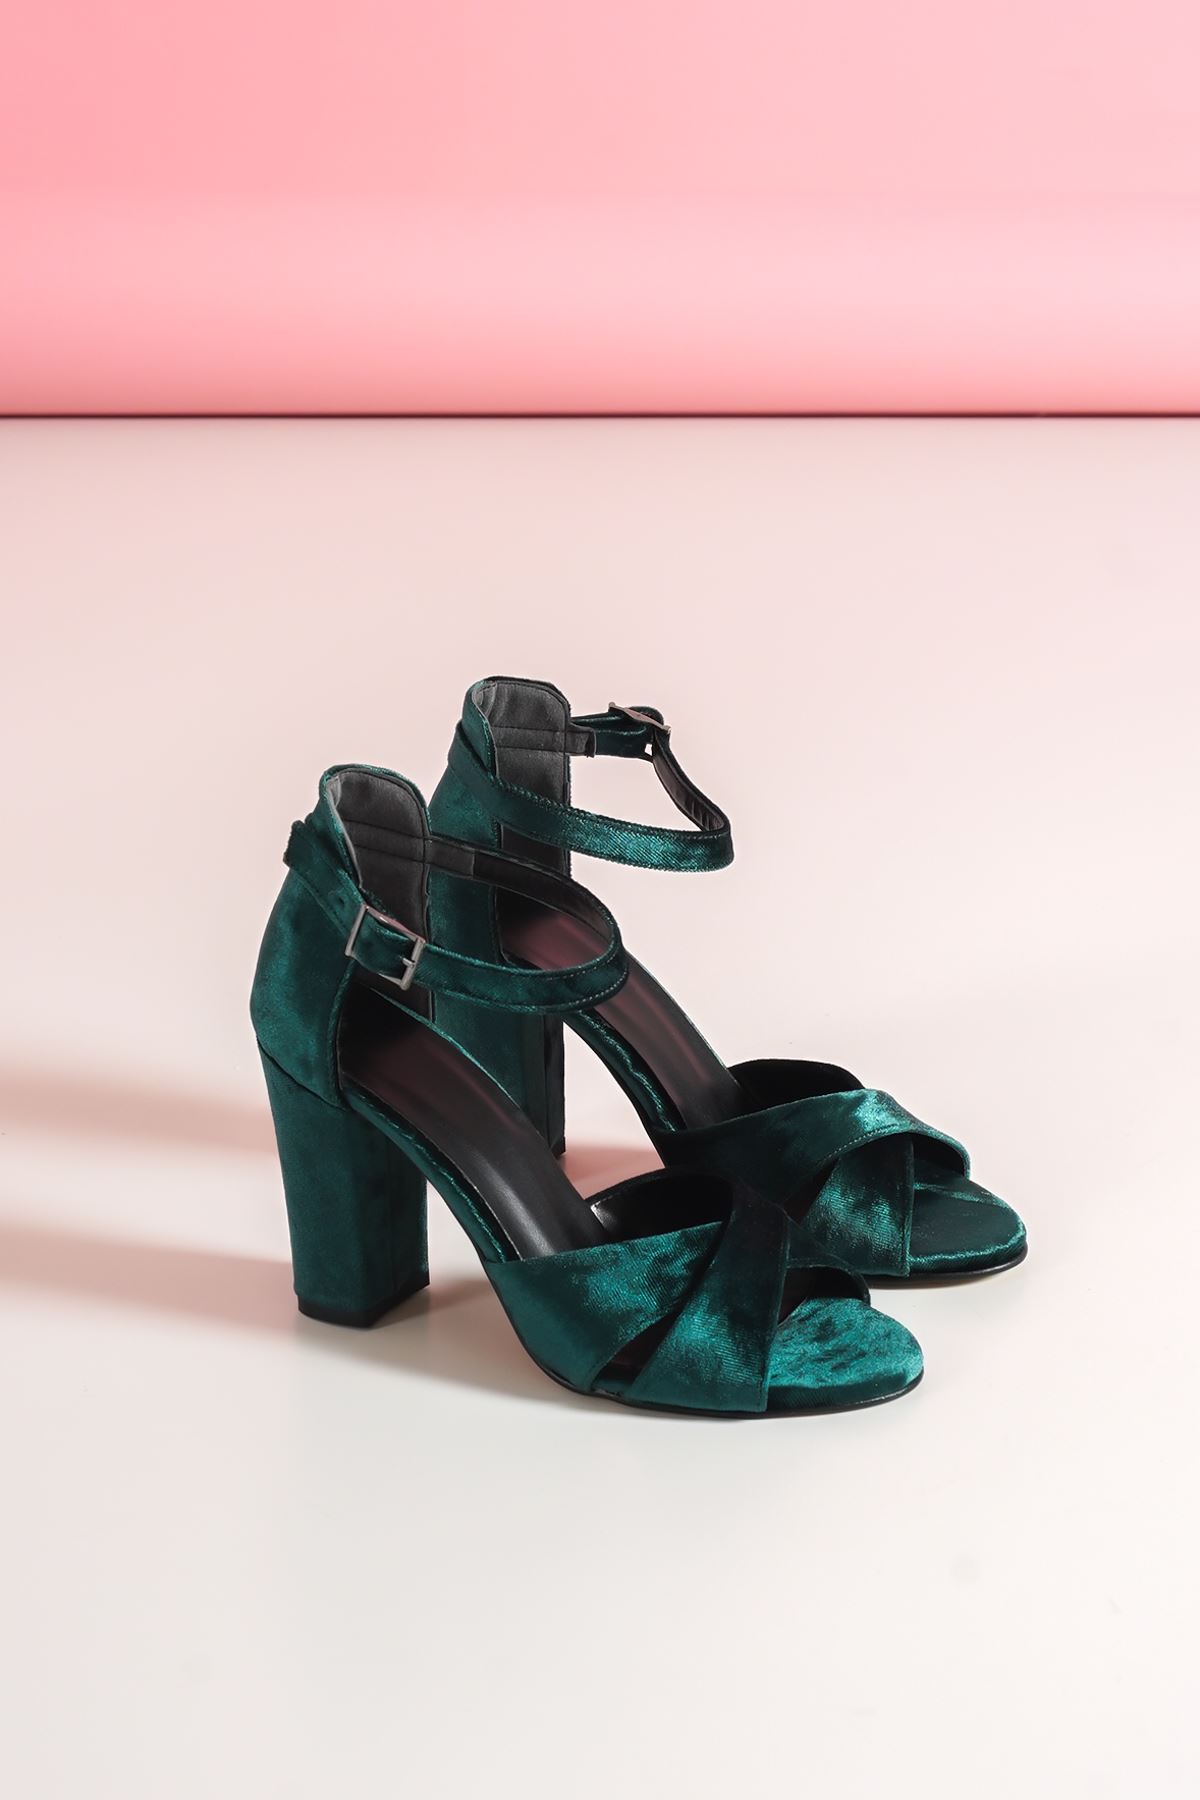 Jany Haki Yeşil Kadife Topuklu Ayakkabı